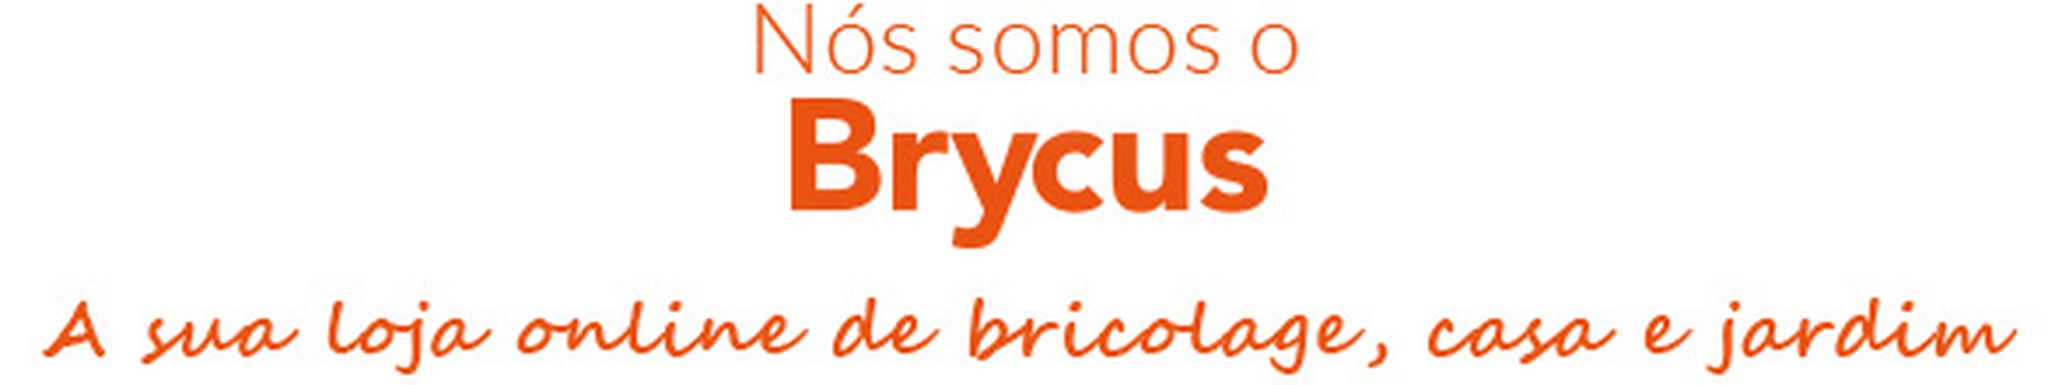 Somos Brycus, sua loja de bricolage, casa e jardim